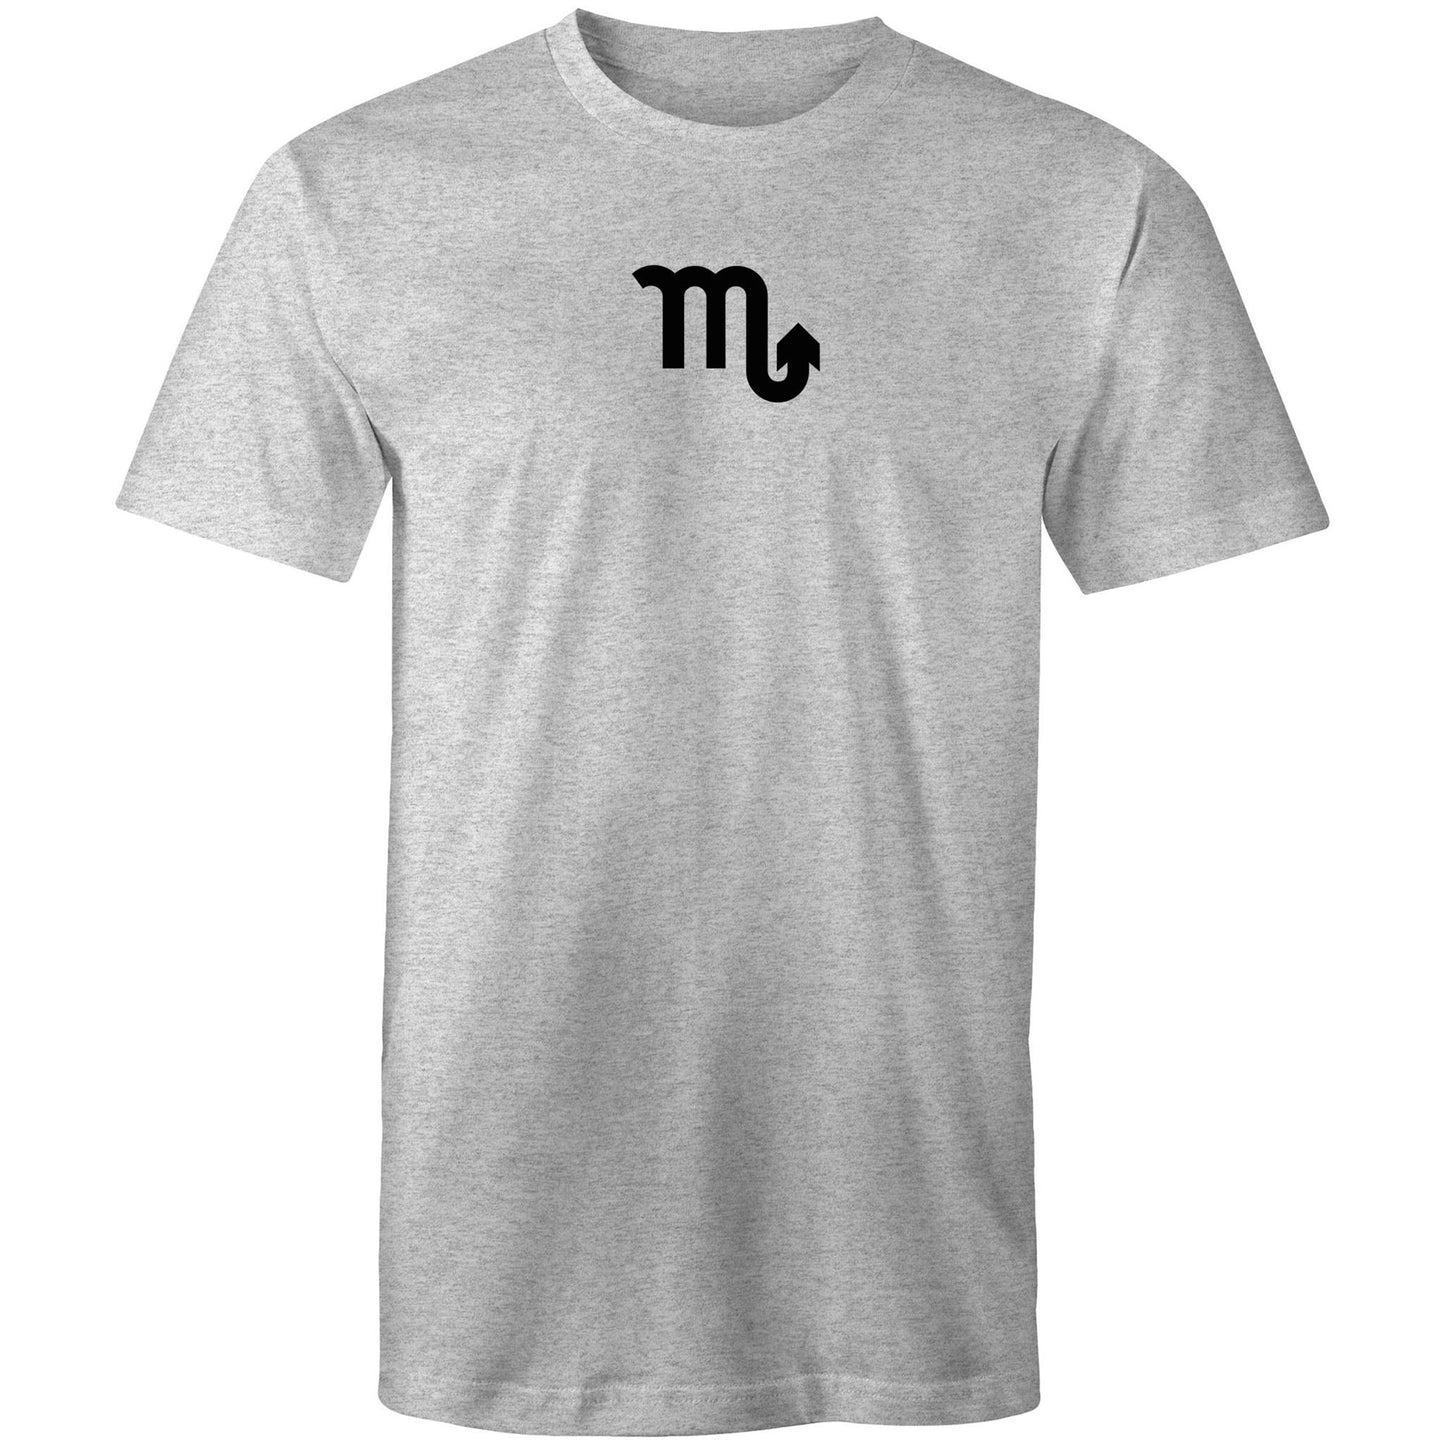 Scorpio T Shirts for Men (Unisex)